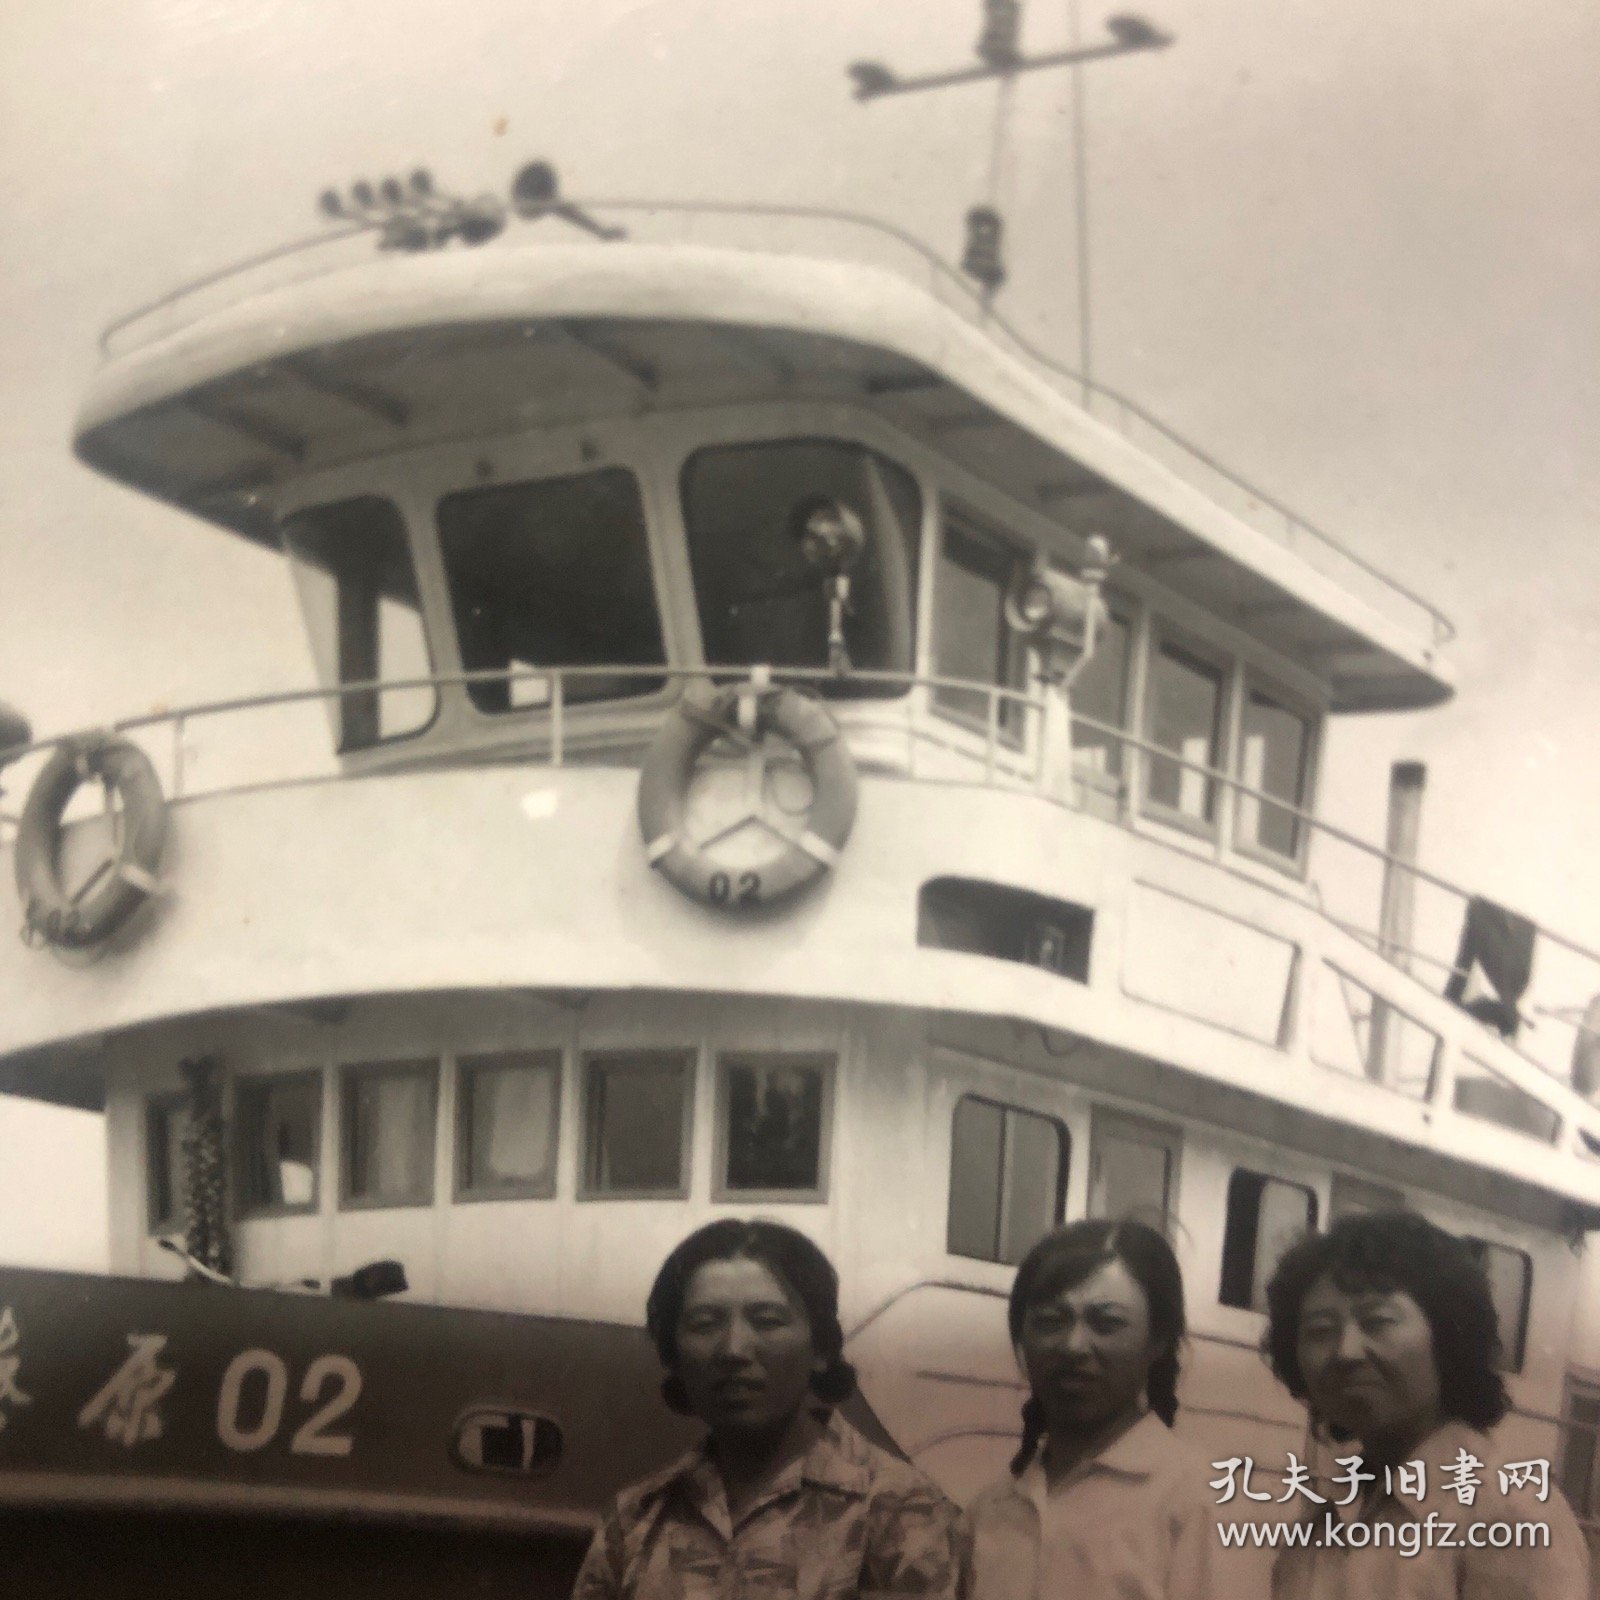 老照片  三名女性 背景里有个船 叫辽源02号  非常稀少的影像资料